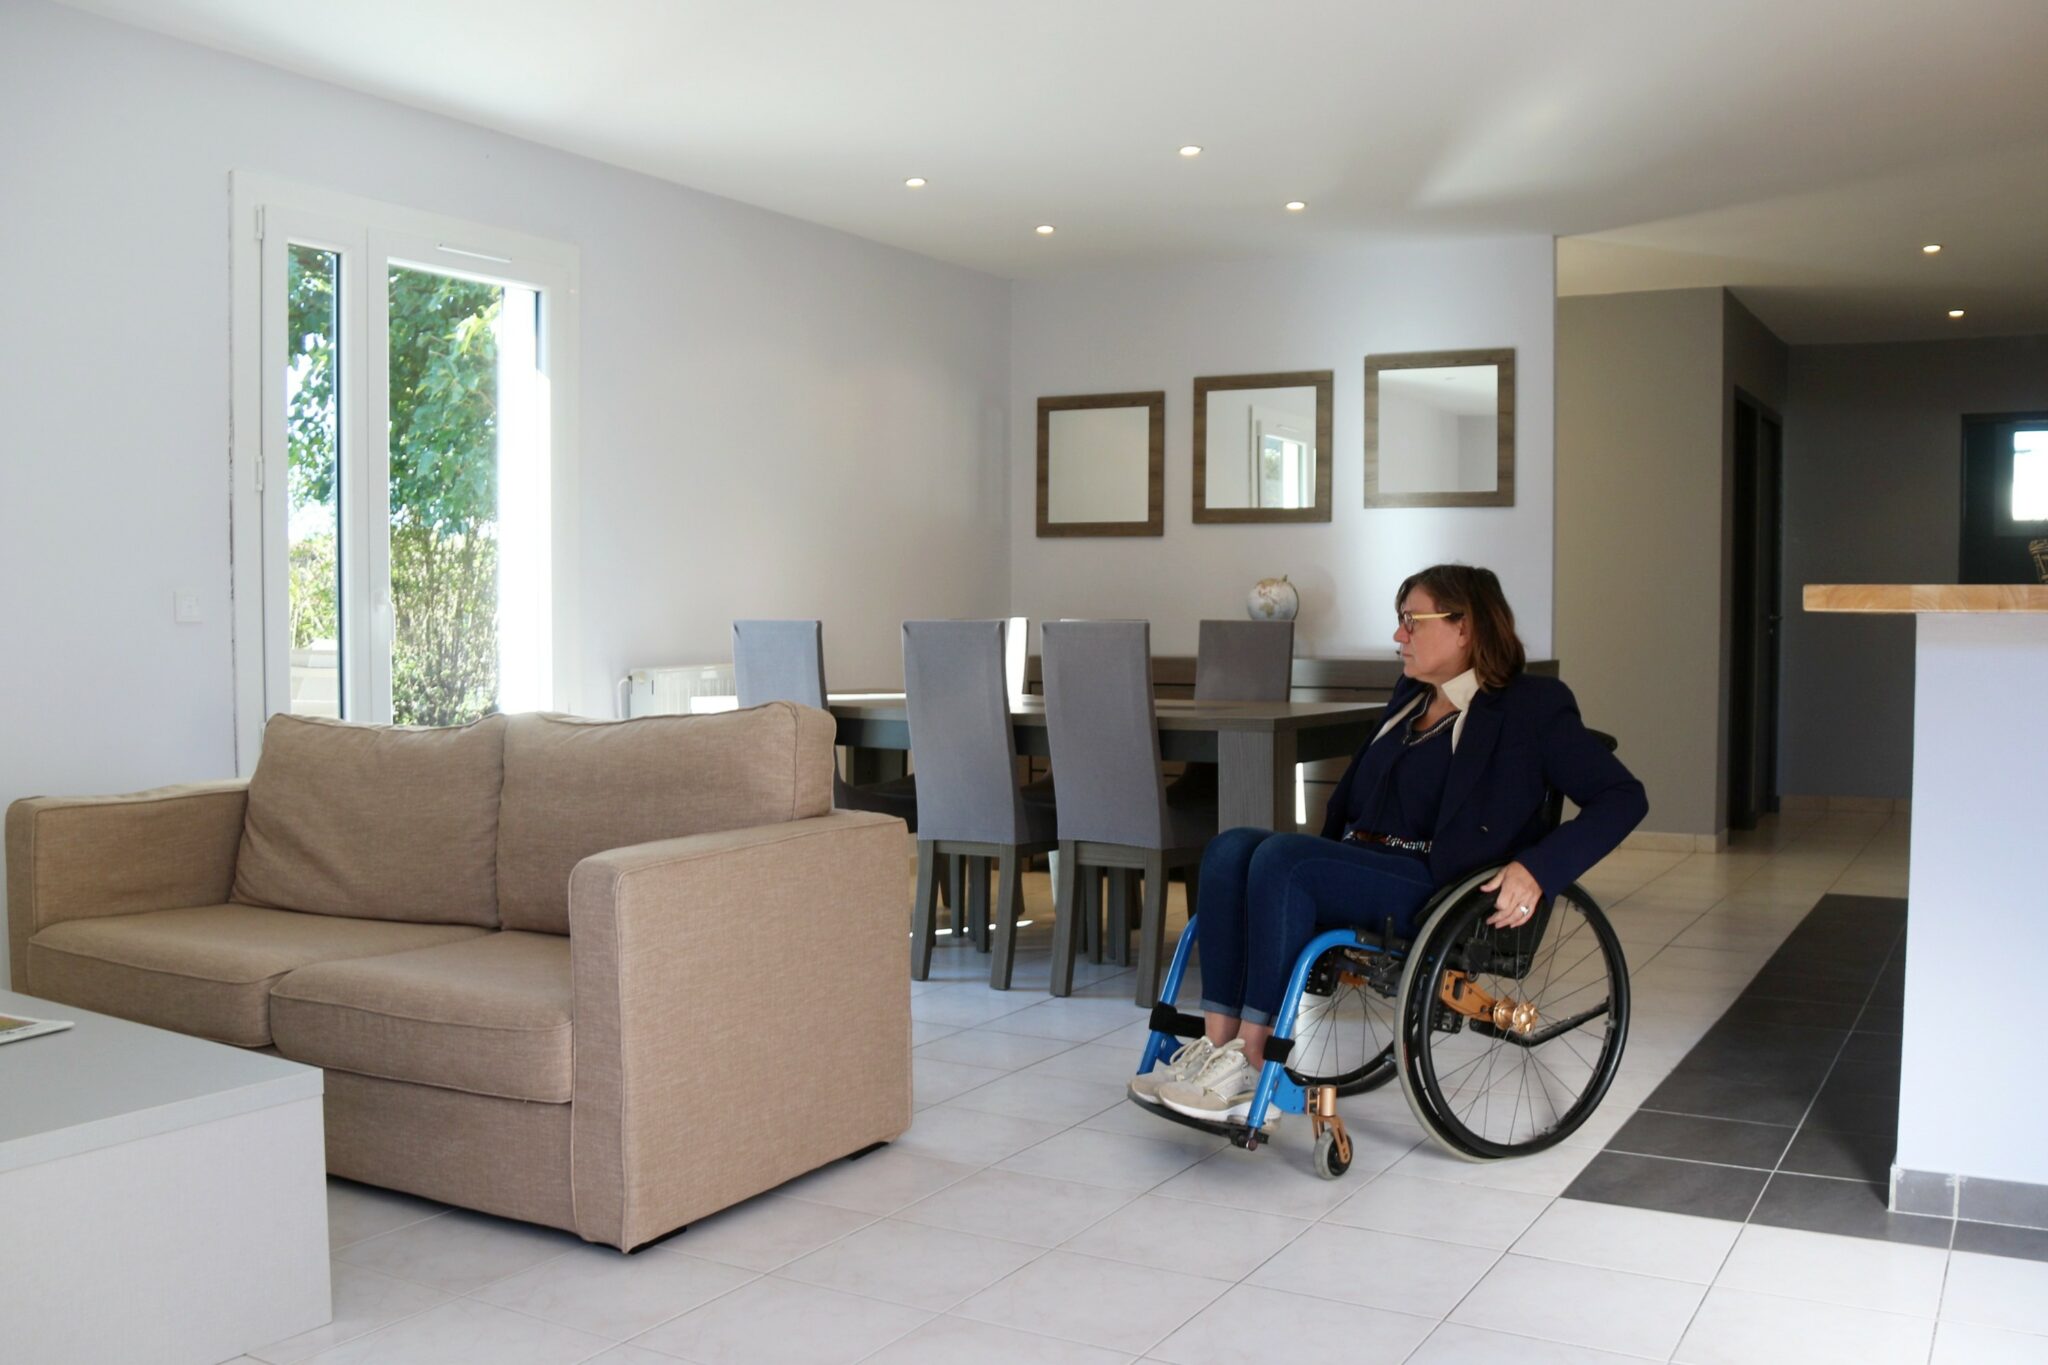 Maison accessible pour personne handicapée